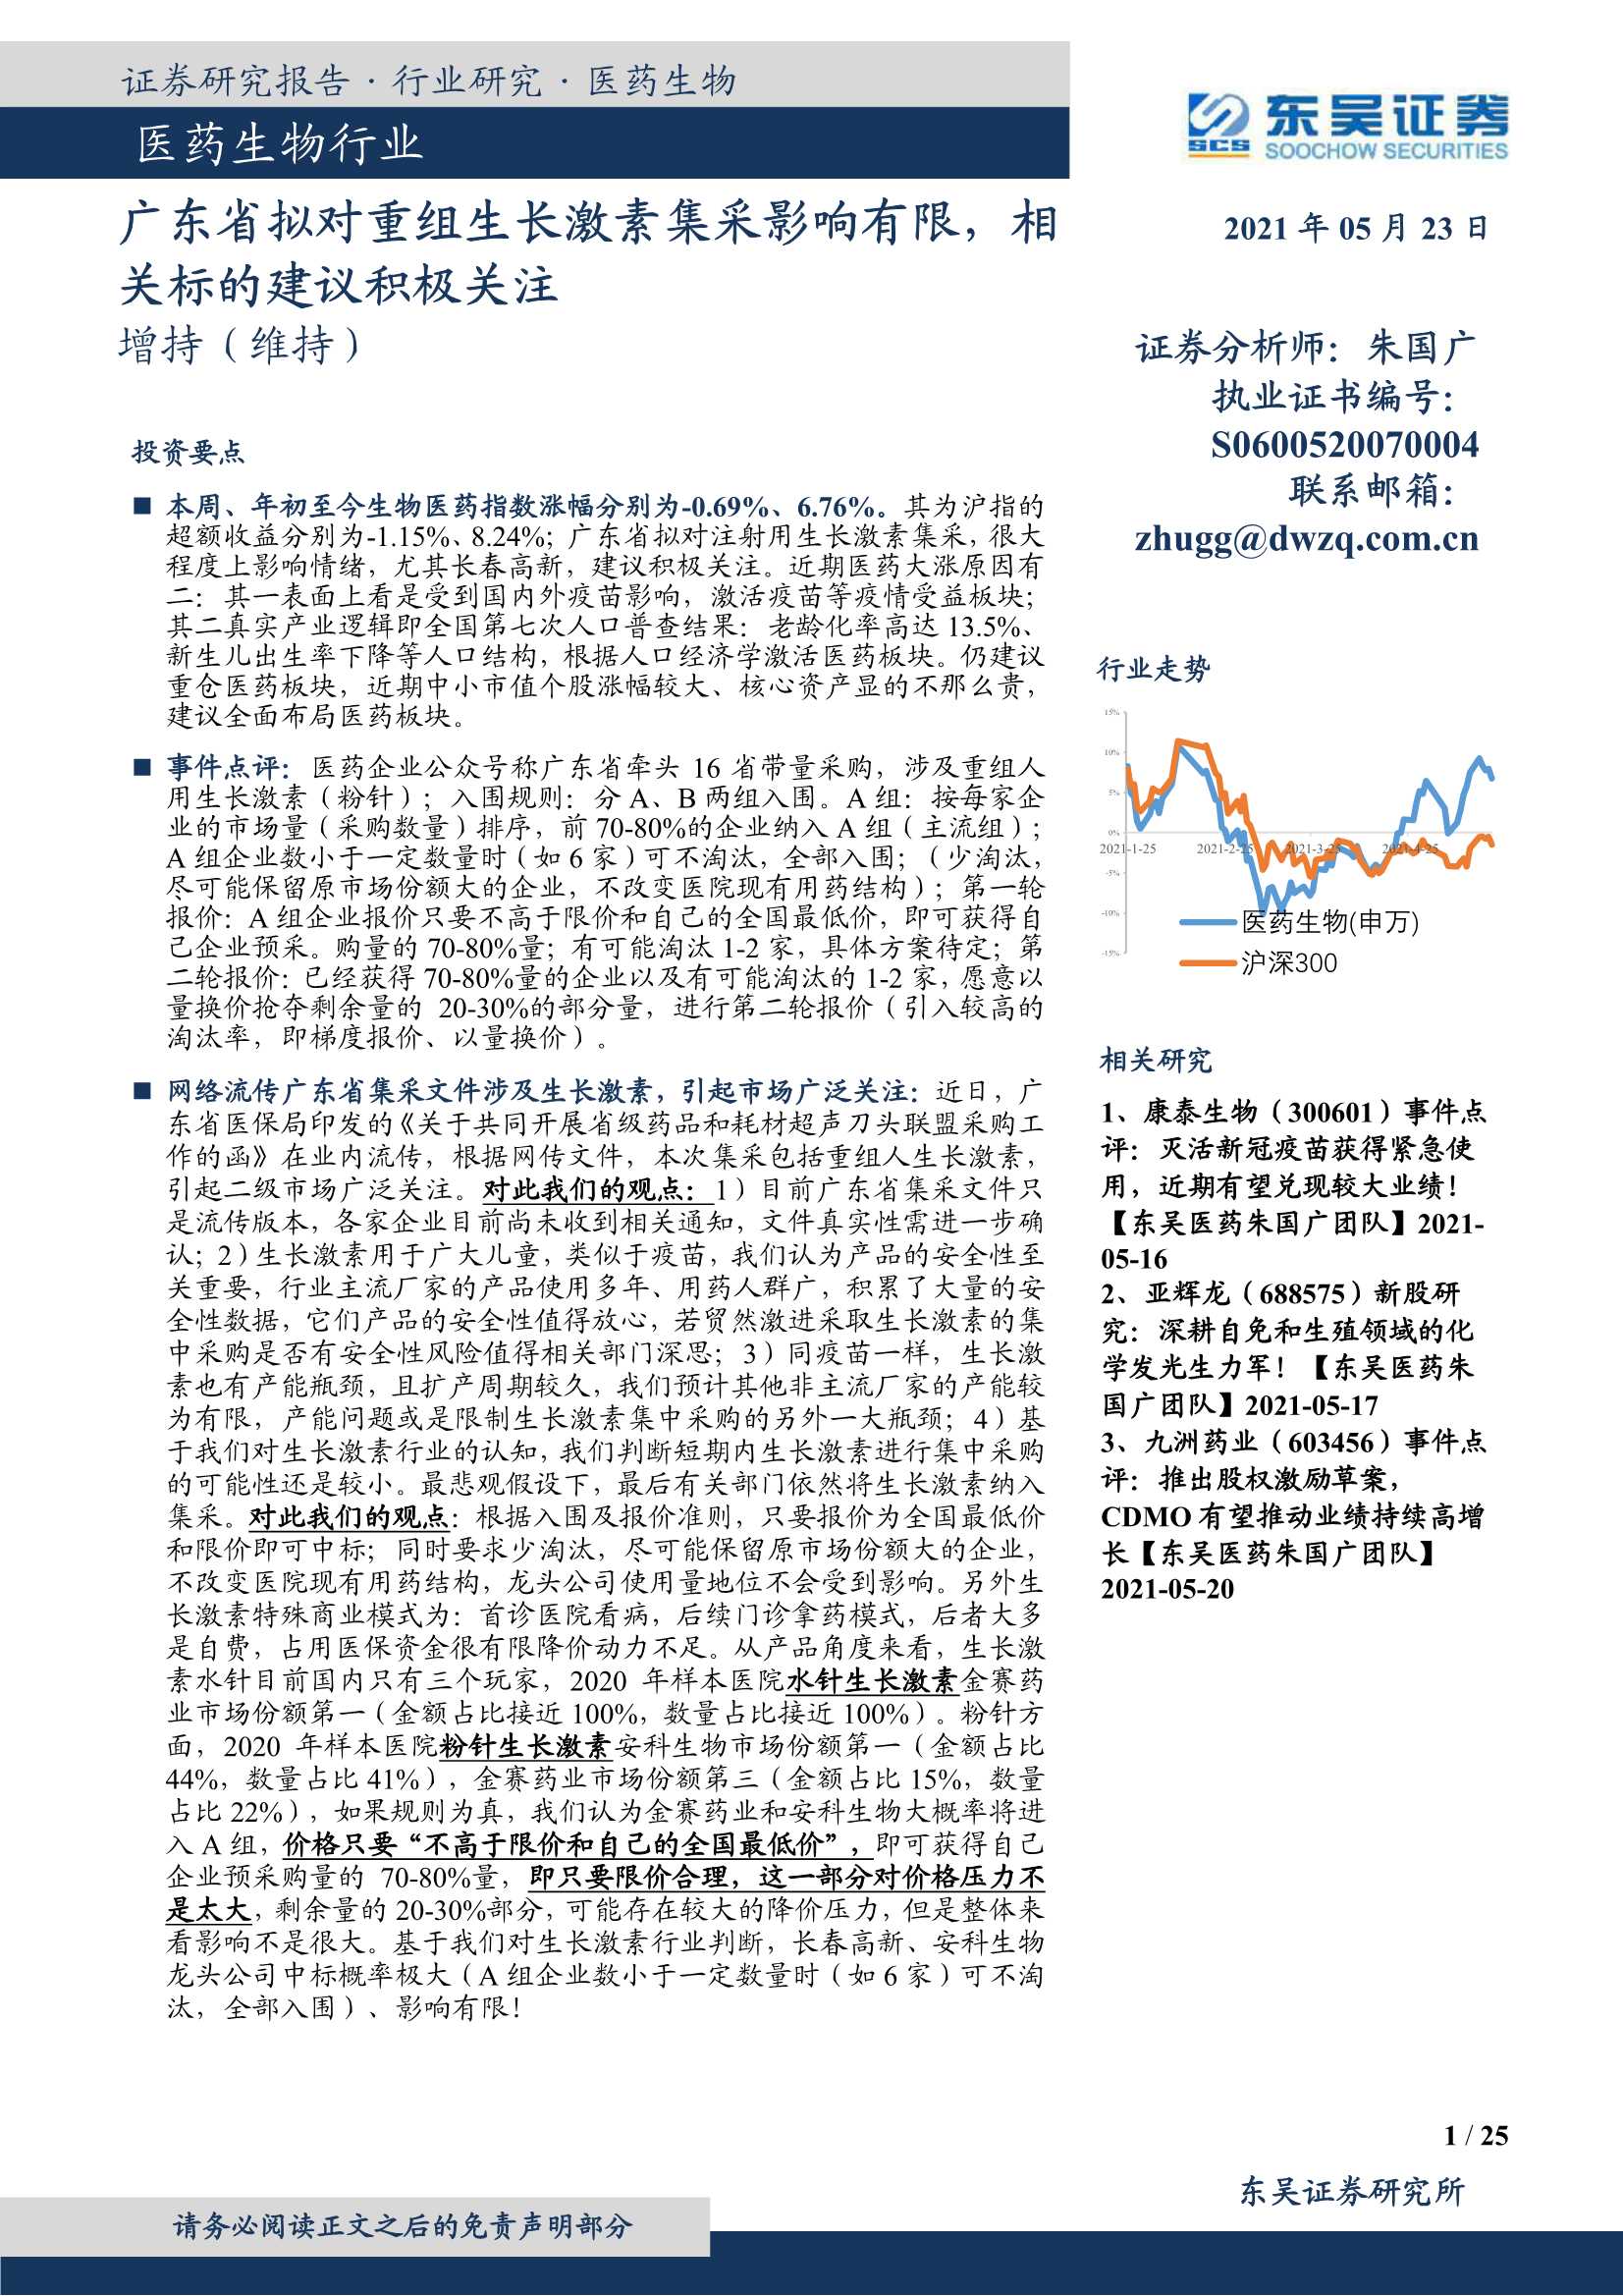 东吴证券-医药生物行业：广东省拟对重组生长激素集采影响有限，相关标的建议积极关注-20210523-25页